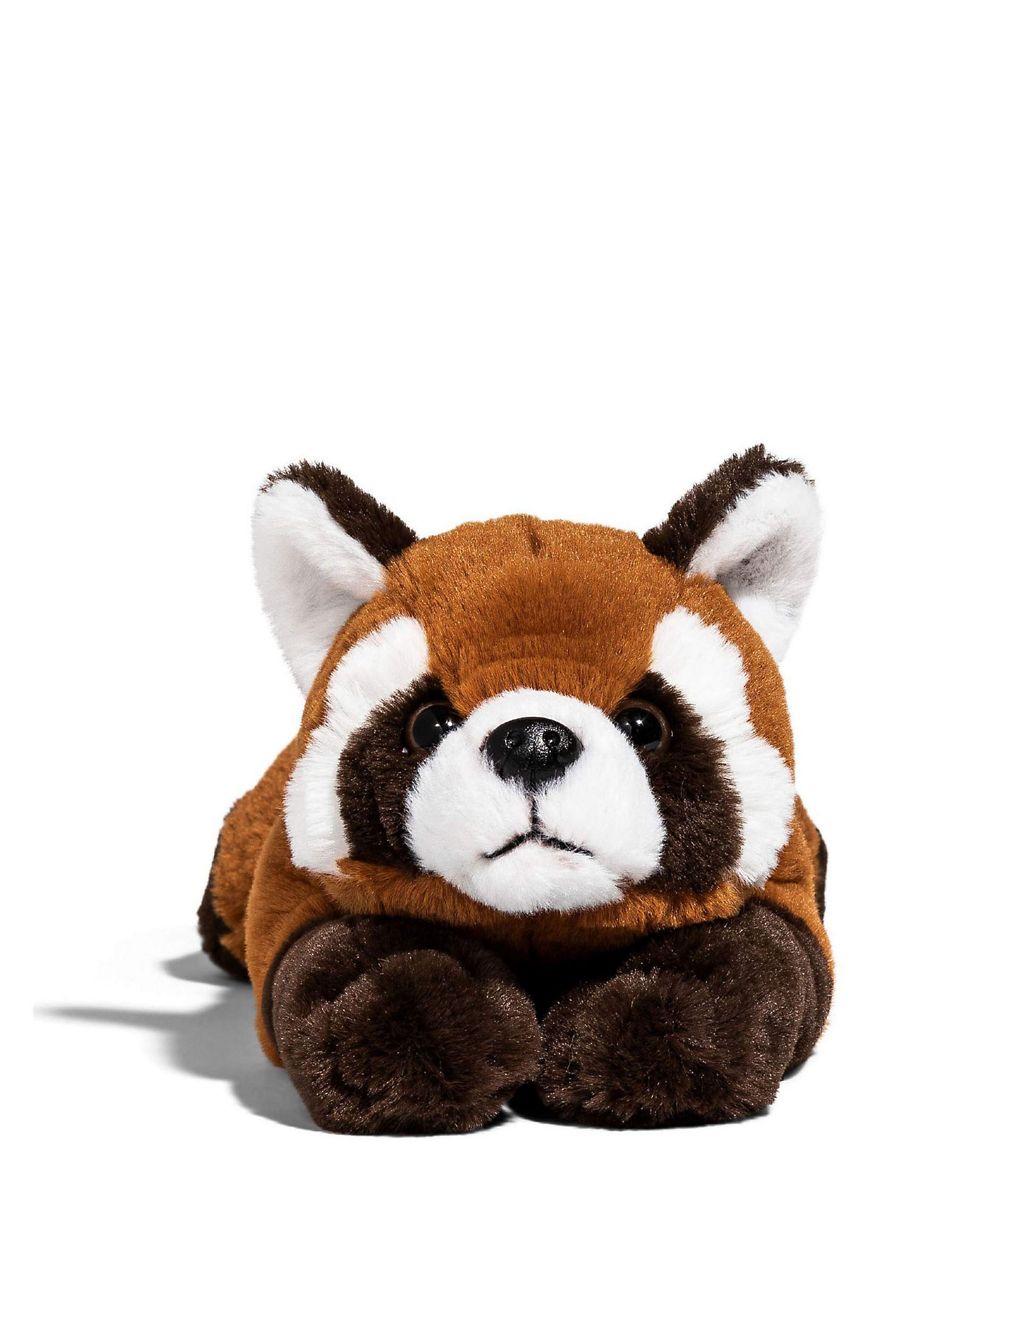 Red Panda Plush Toy 1 of 3